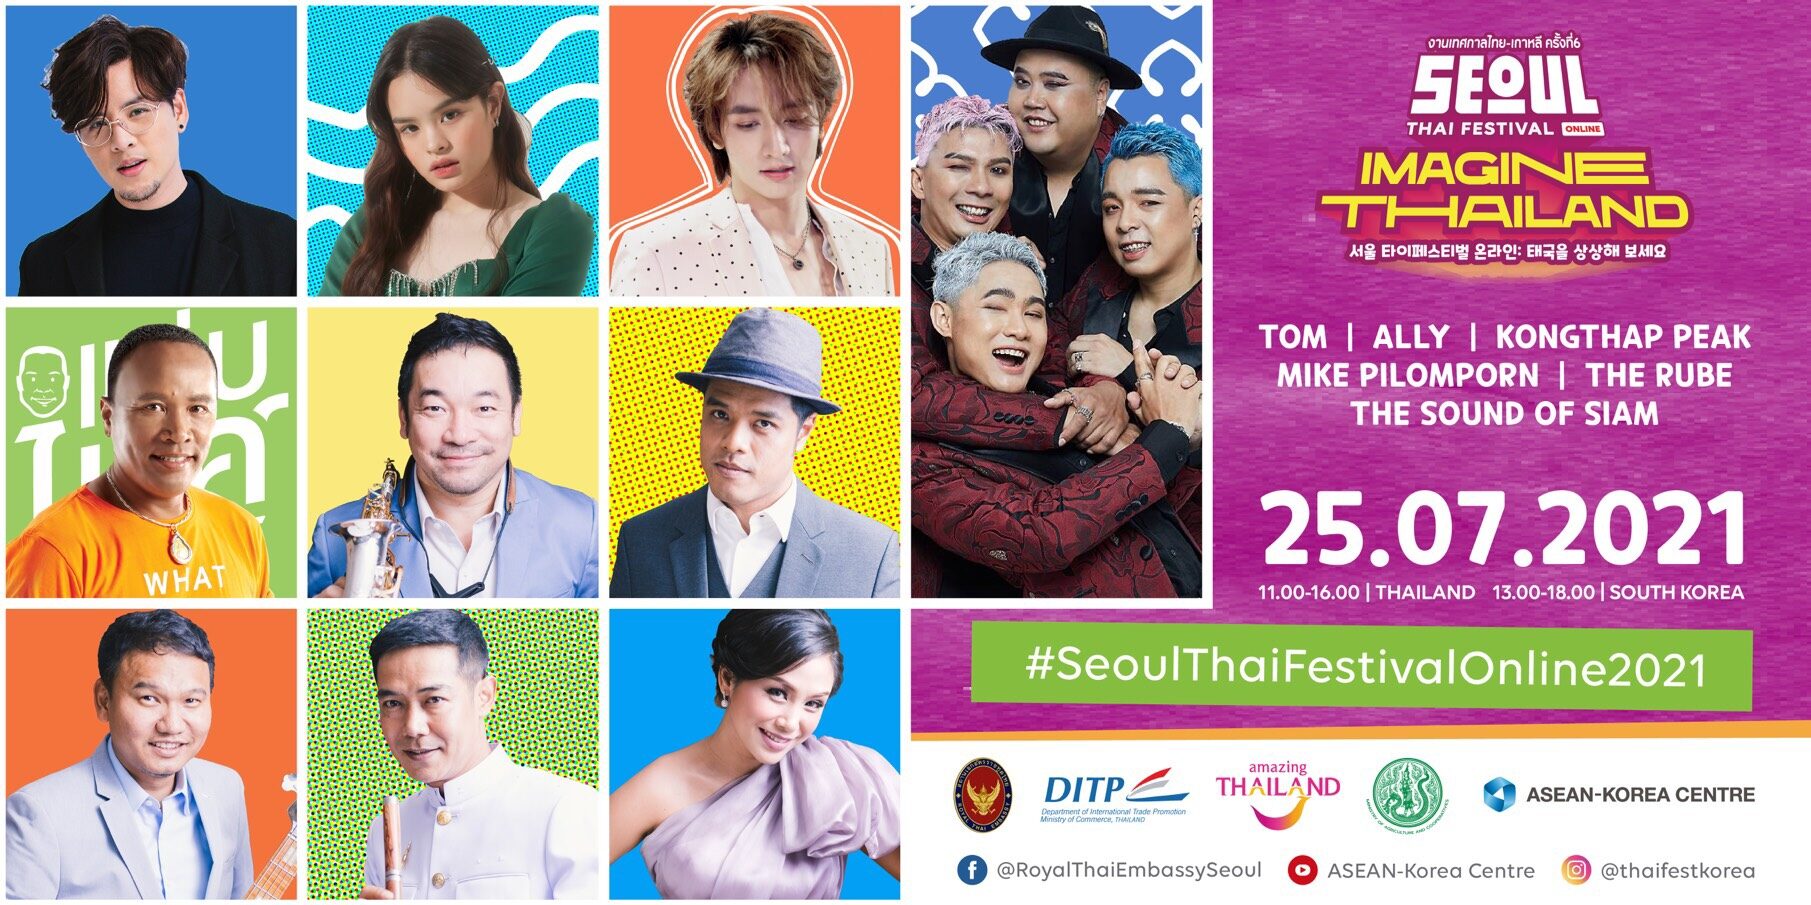 สอท. ณ กรุงโซล เชิญชม “Seoul Thai Festival Online 2021” เทศกาลไทยที่ไม่ธรรมดา 25 ก.ค.นี้